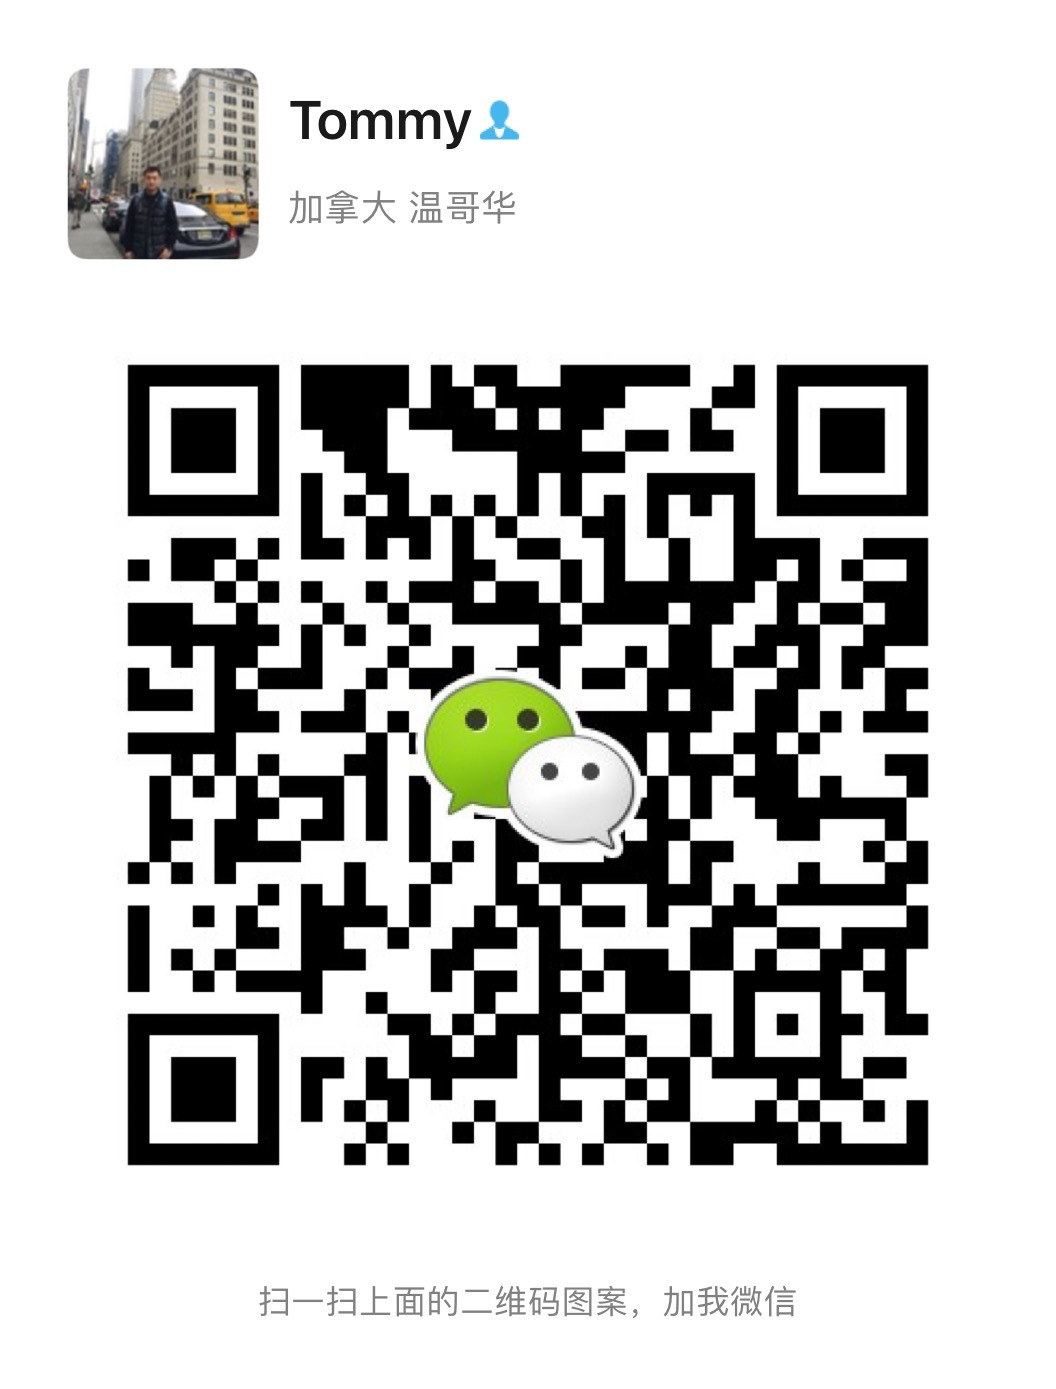 210813111813_WeChat Image_20210813141631.jpg